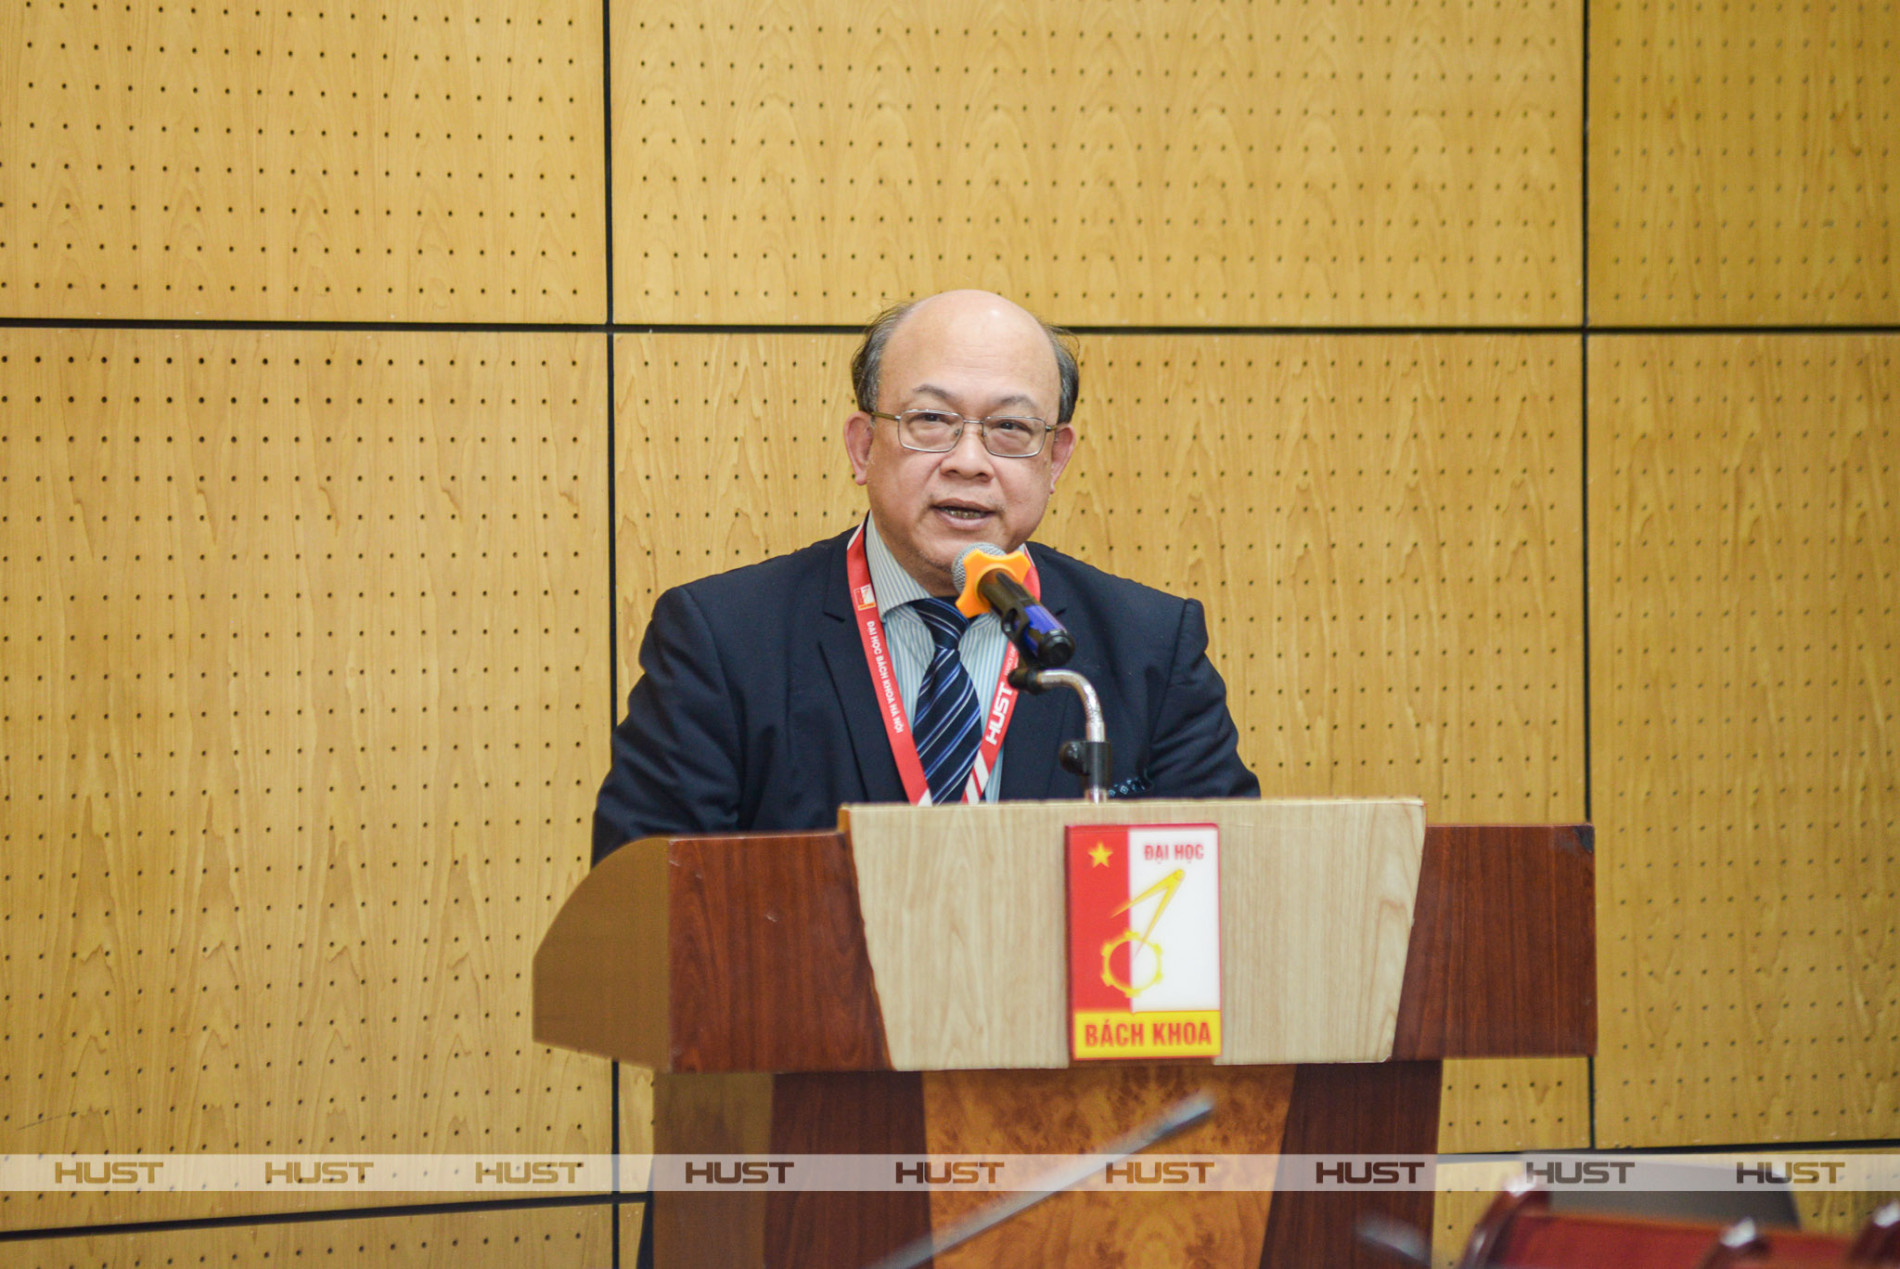 PGS. Huỳnh Quyết Thắng, Giám đốc Đại học Bách khoa Hà Nội phát biểu tại buổi gặp mặt ngày 1/2. Ảnh: Kiên Phạm